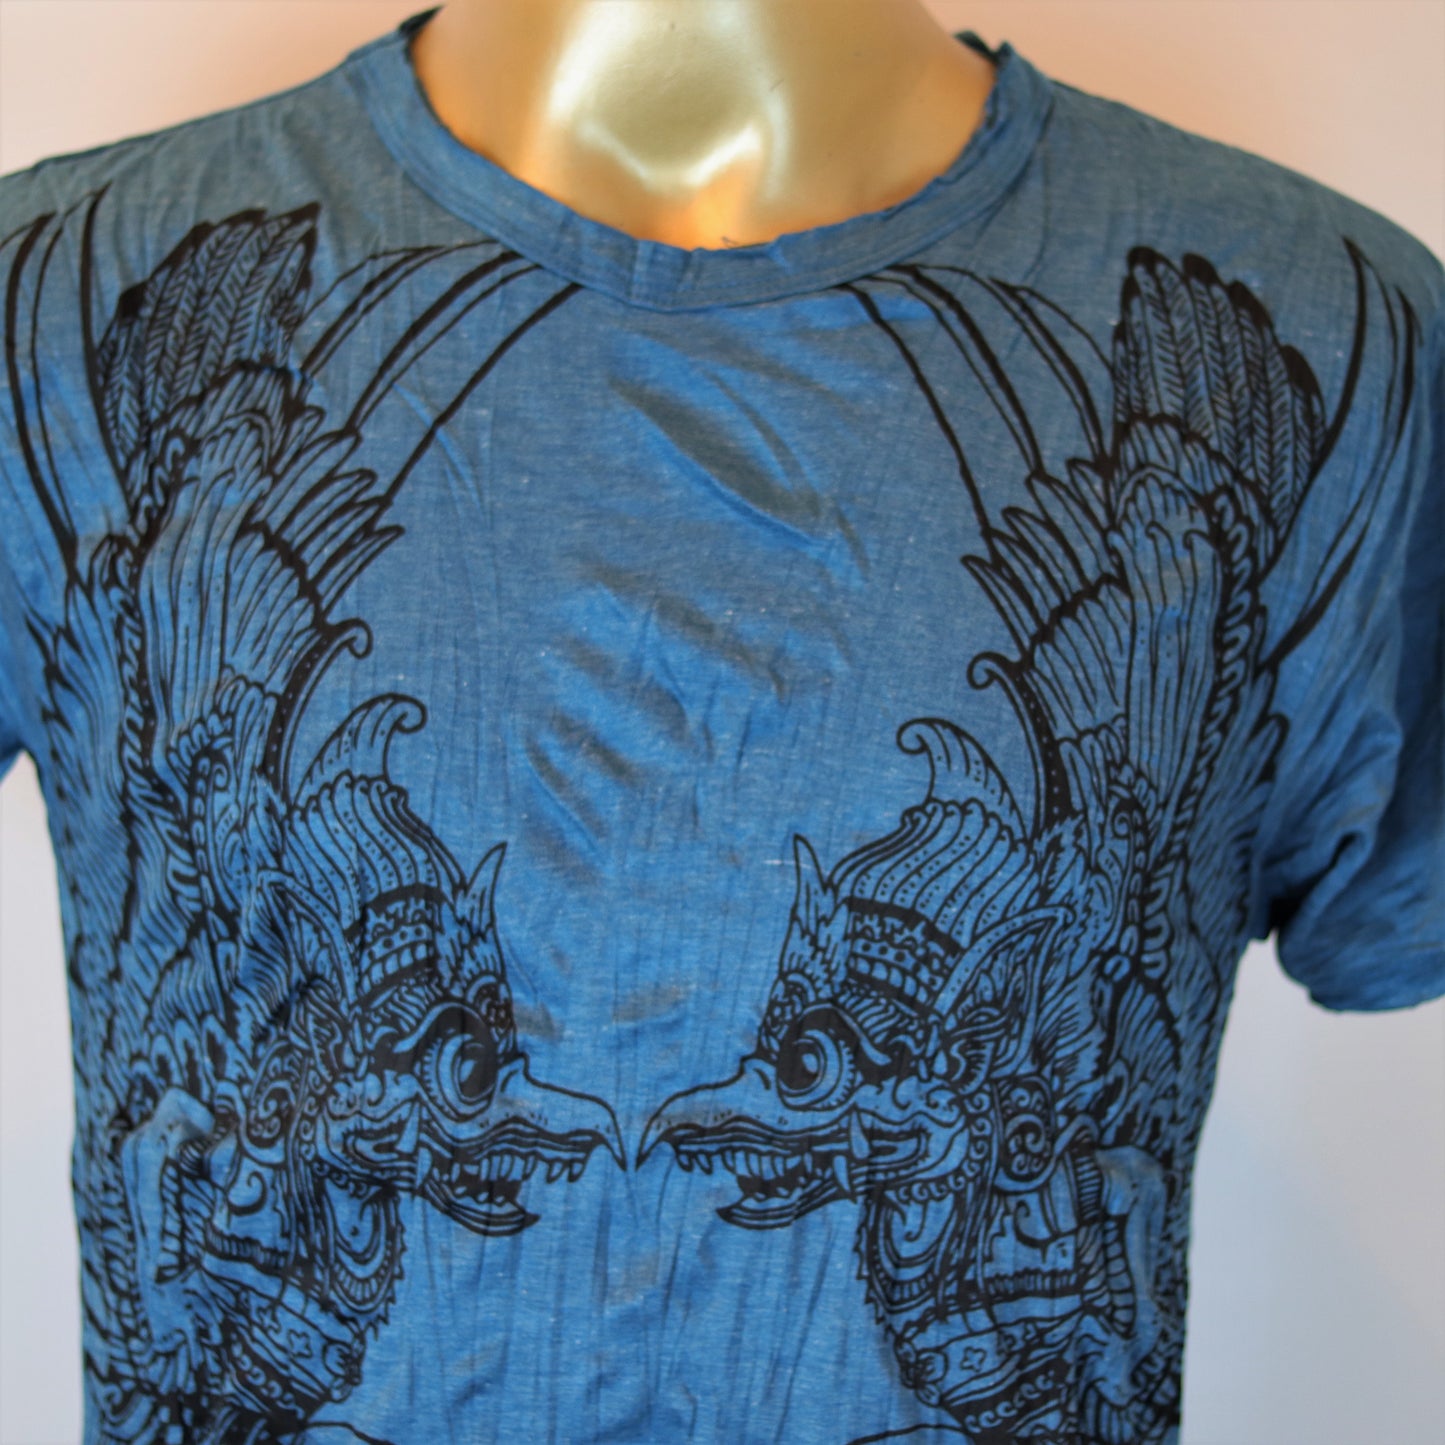 Garuda Men's T-Shirt by Sure